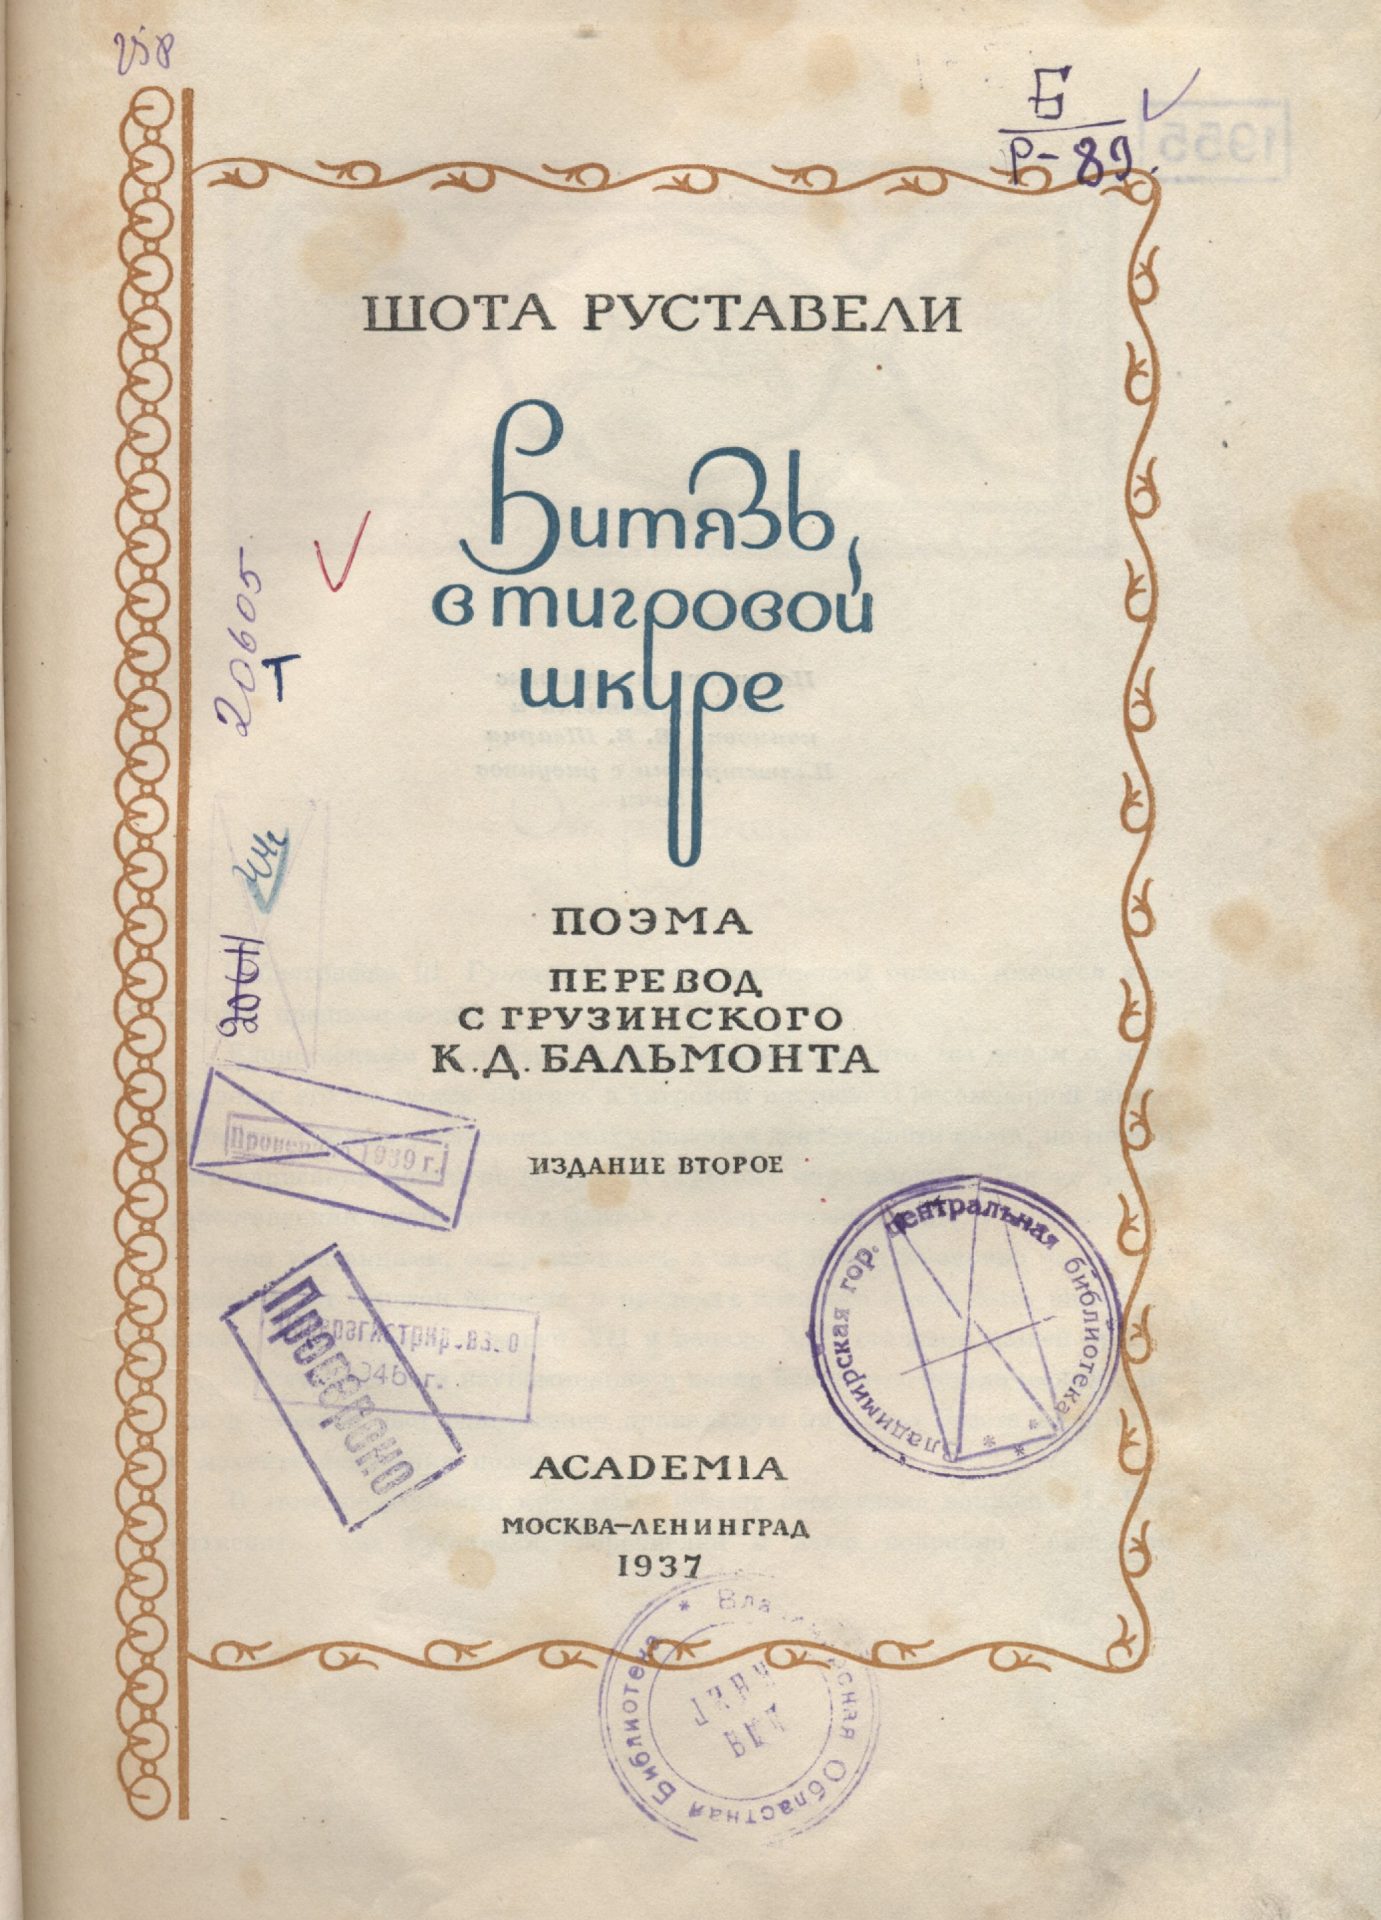 Титульный лист книги Ш. Руставели "Витязь в тигровой шкуре" в переводе К. Д. Бальмонта1937 года издания